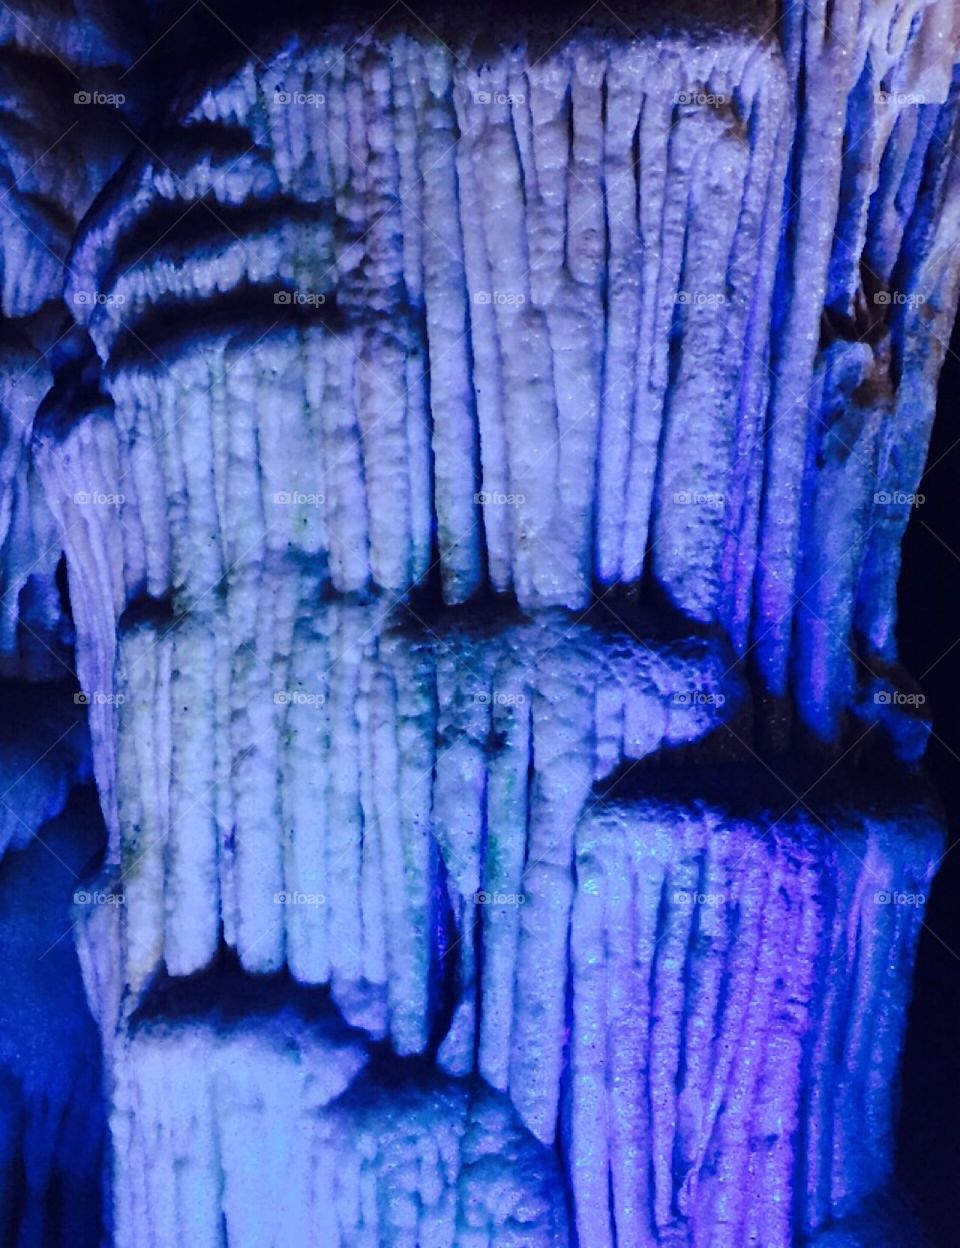 Cave wonders in Korea